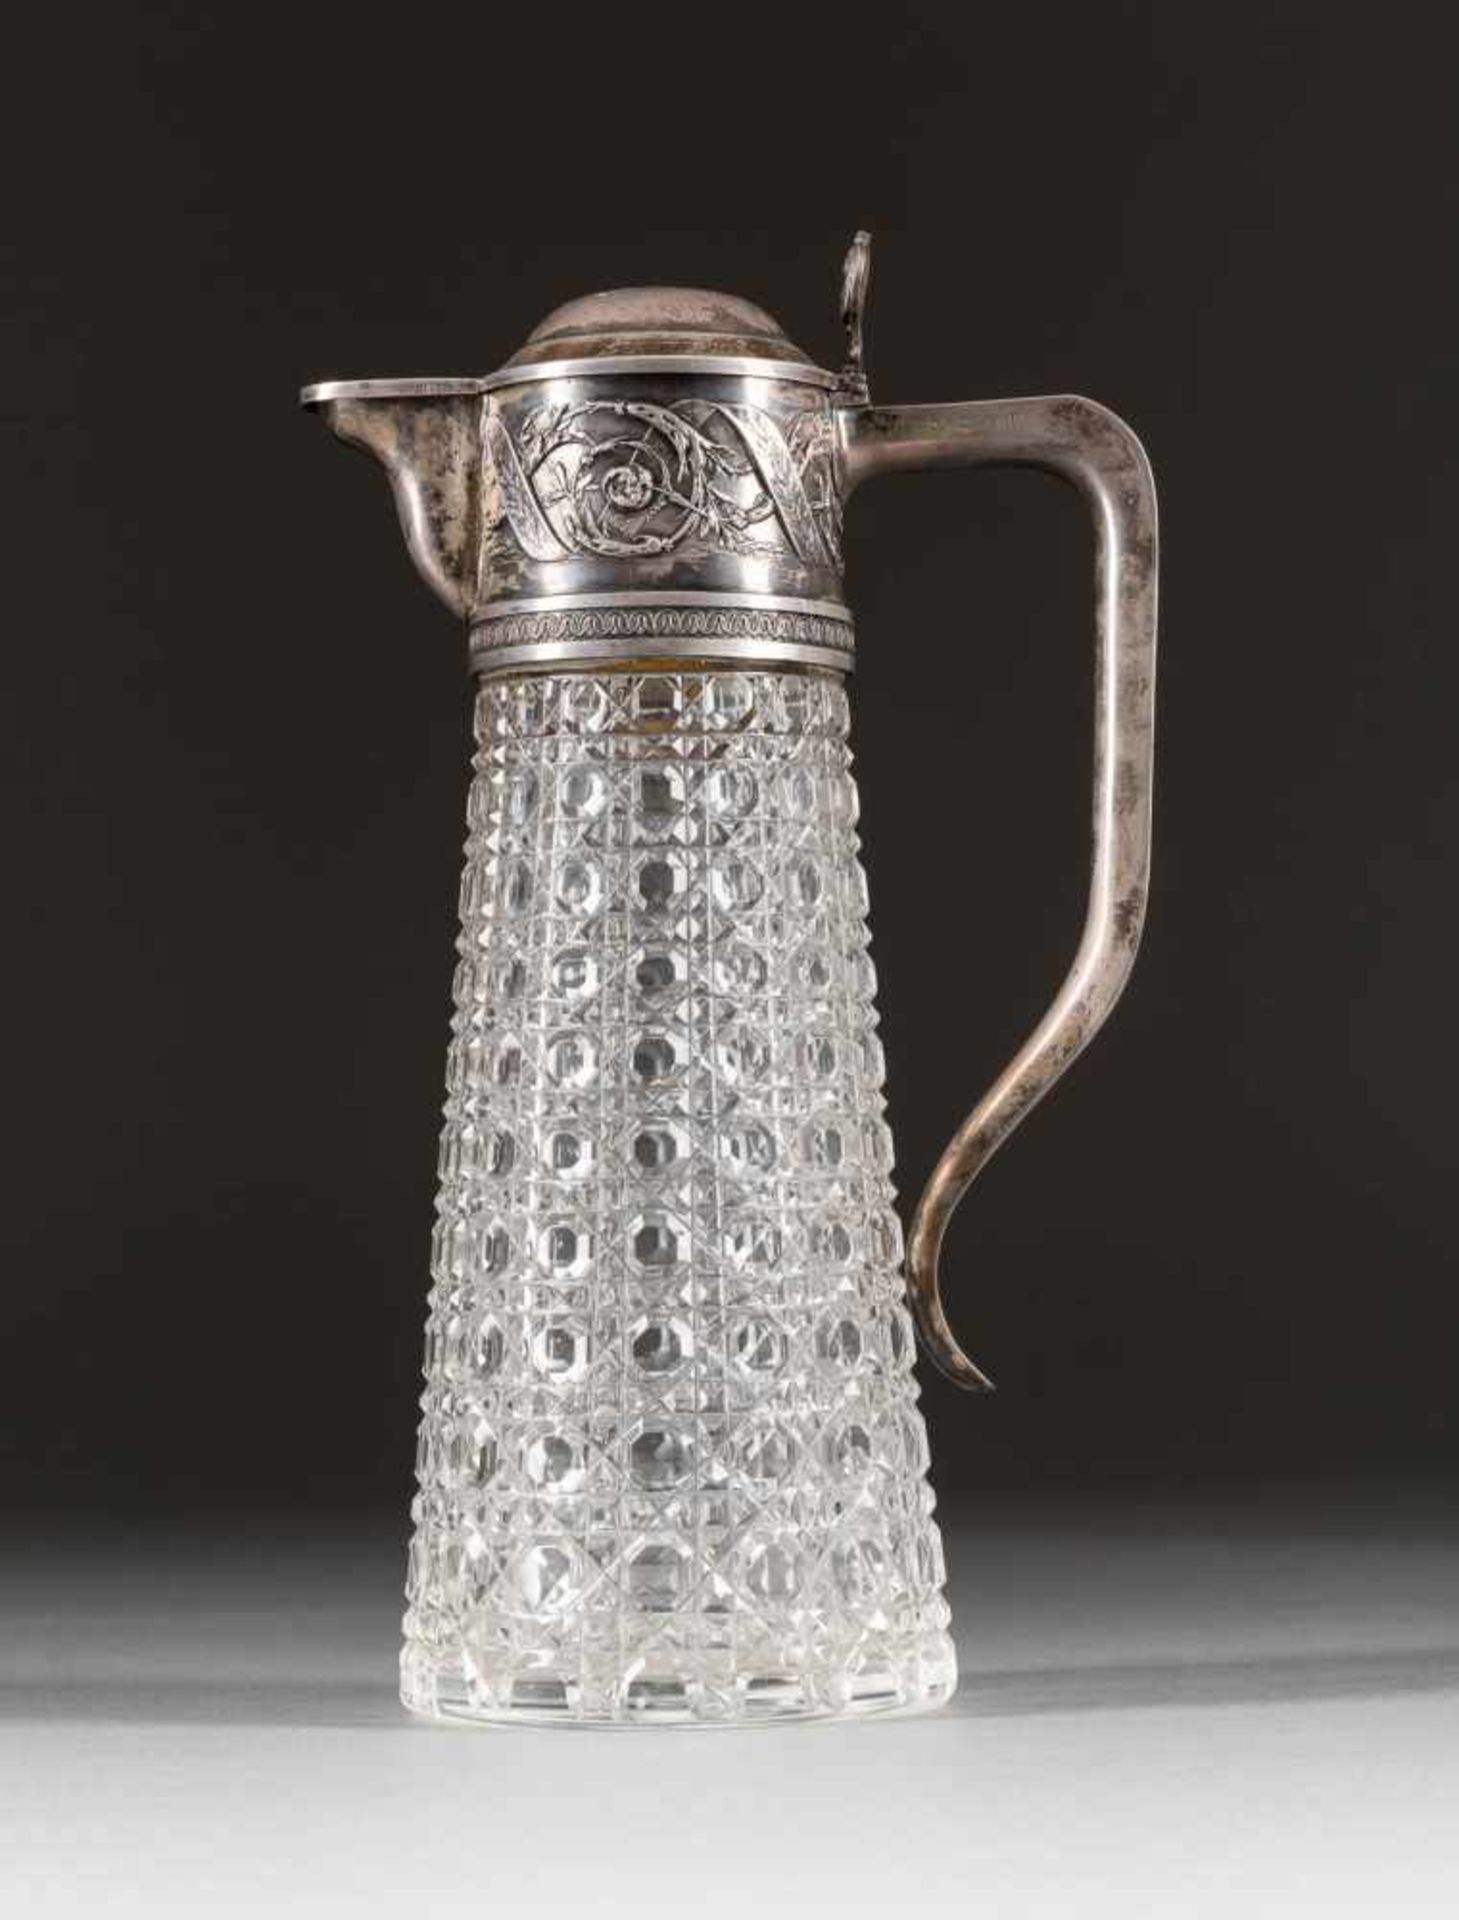 KARAFFE MIT SILBERMONTIERUNG Russland, um 1900 Farbloses, schliffverziertes Glas,